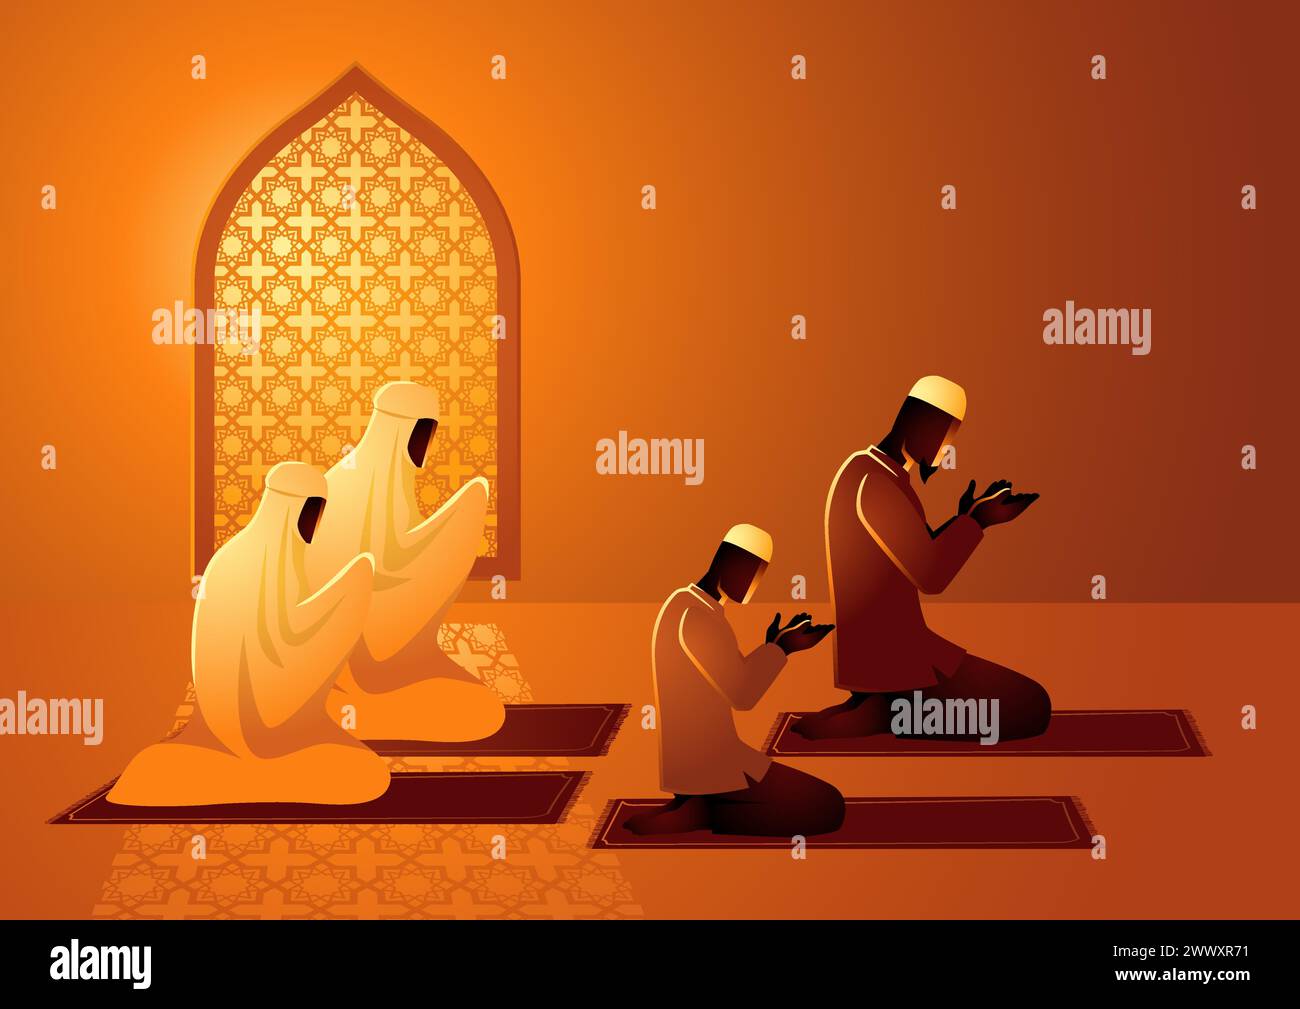 Vektor-Illustration der muslimischen Familie, die zusammen betet Stock Vektor